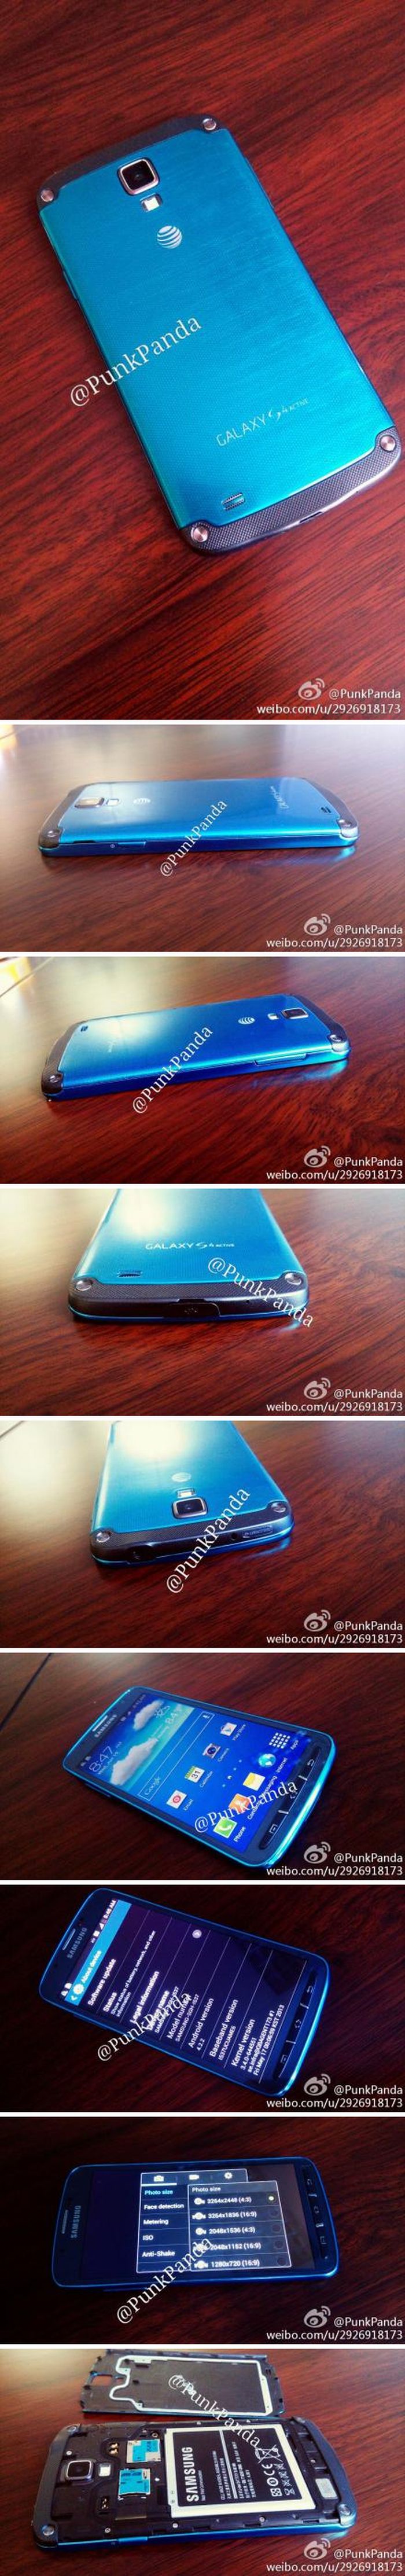 Élőben a kék Samsung Galaxy S4 Active-val